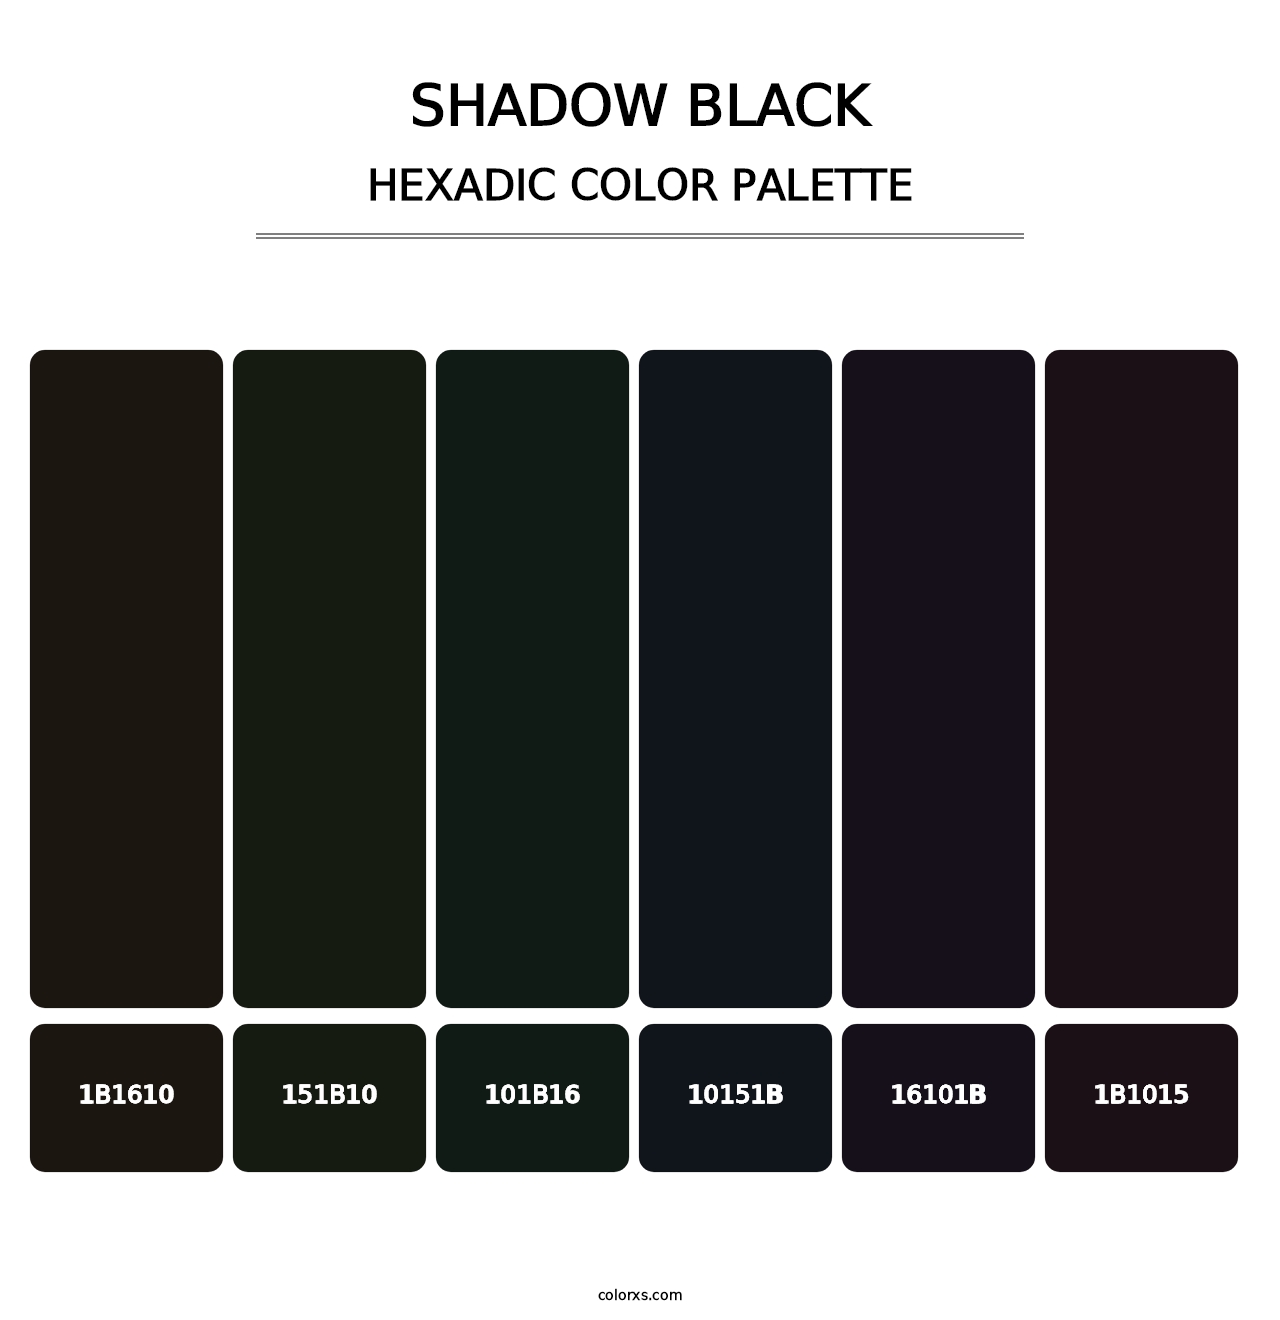 Shadow Black - Hexadic Color Palette